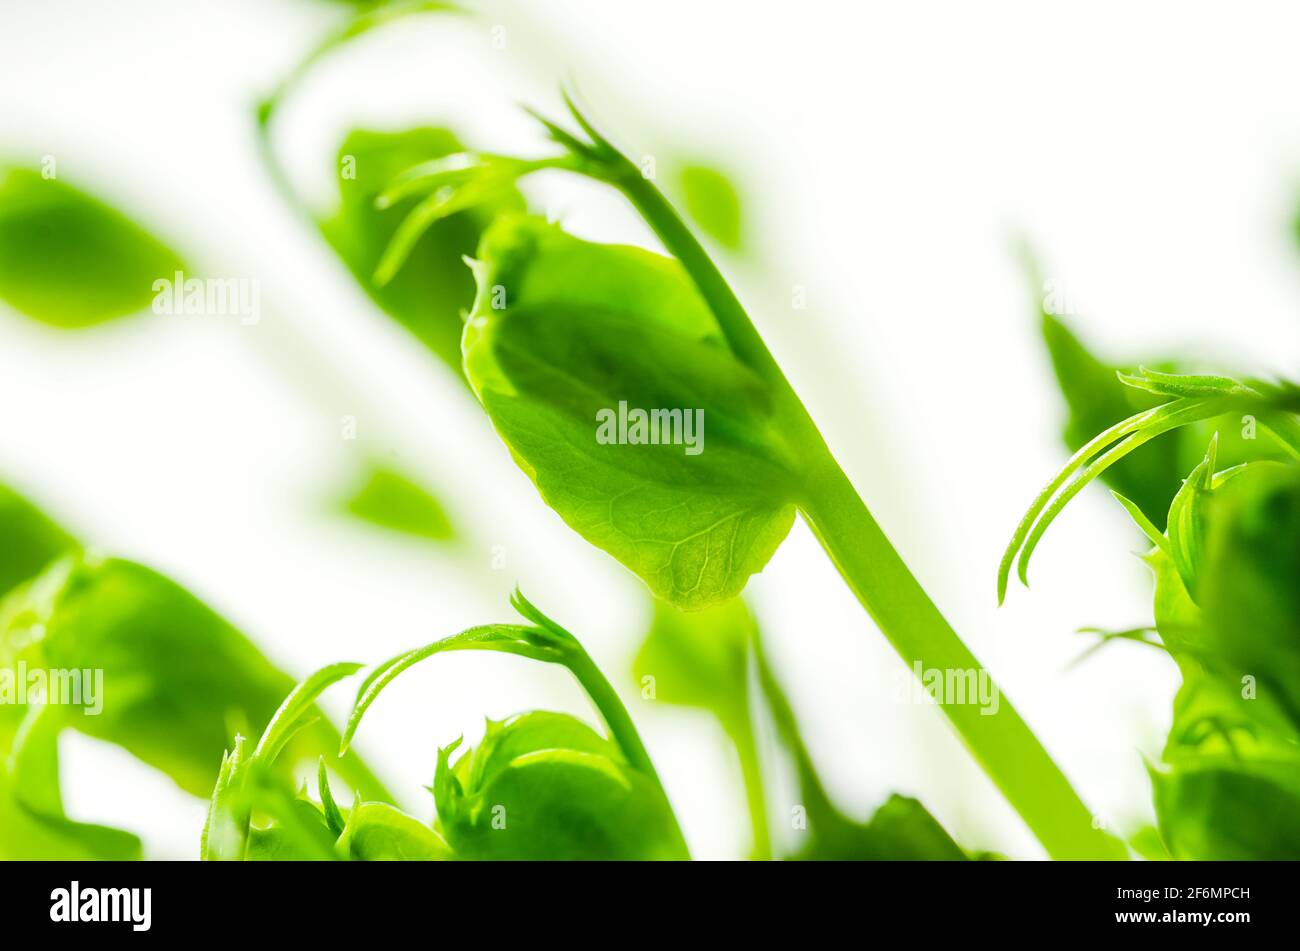 Grünerbsensämlinge, Vorderansicht und Nahaufnahme. Microgreens von Pisum sativum. Grüne Triebe, junge Pflanzen und Sprossen, als Garnierung oder Blattgemüse verwendet. Stockfoto